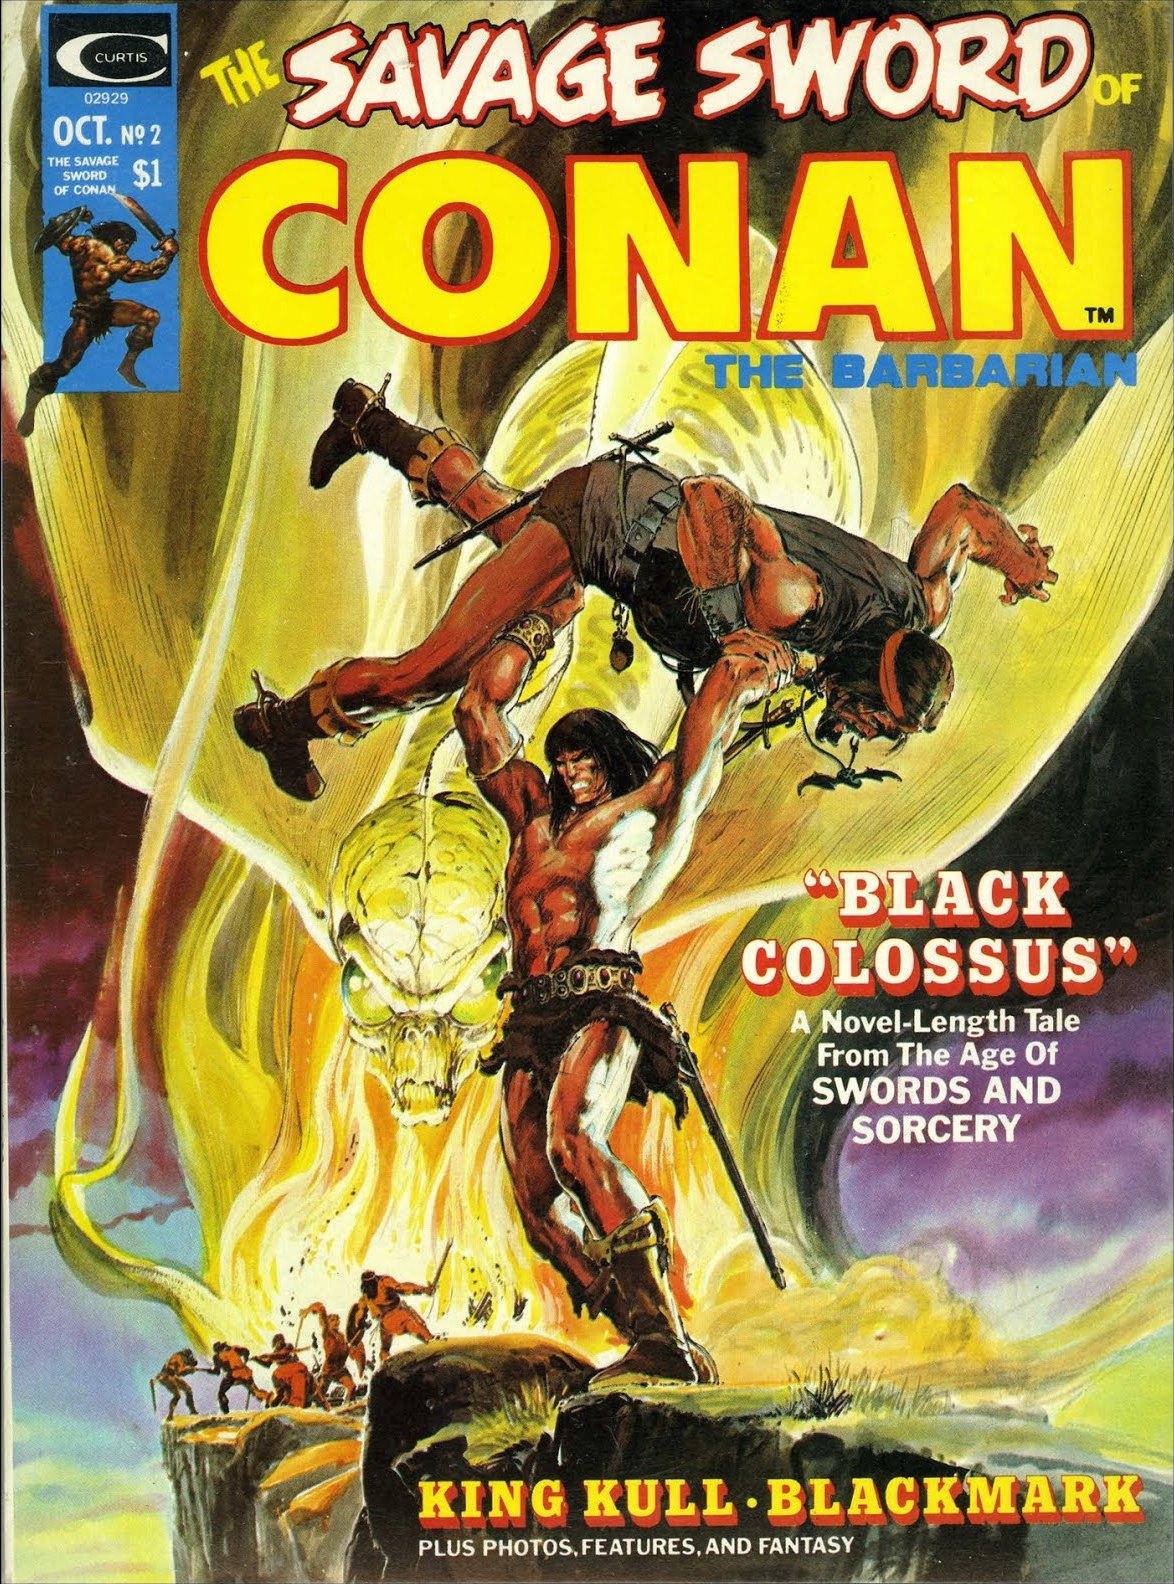 Savage Sword of Conan Vol. 1 #2